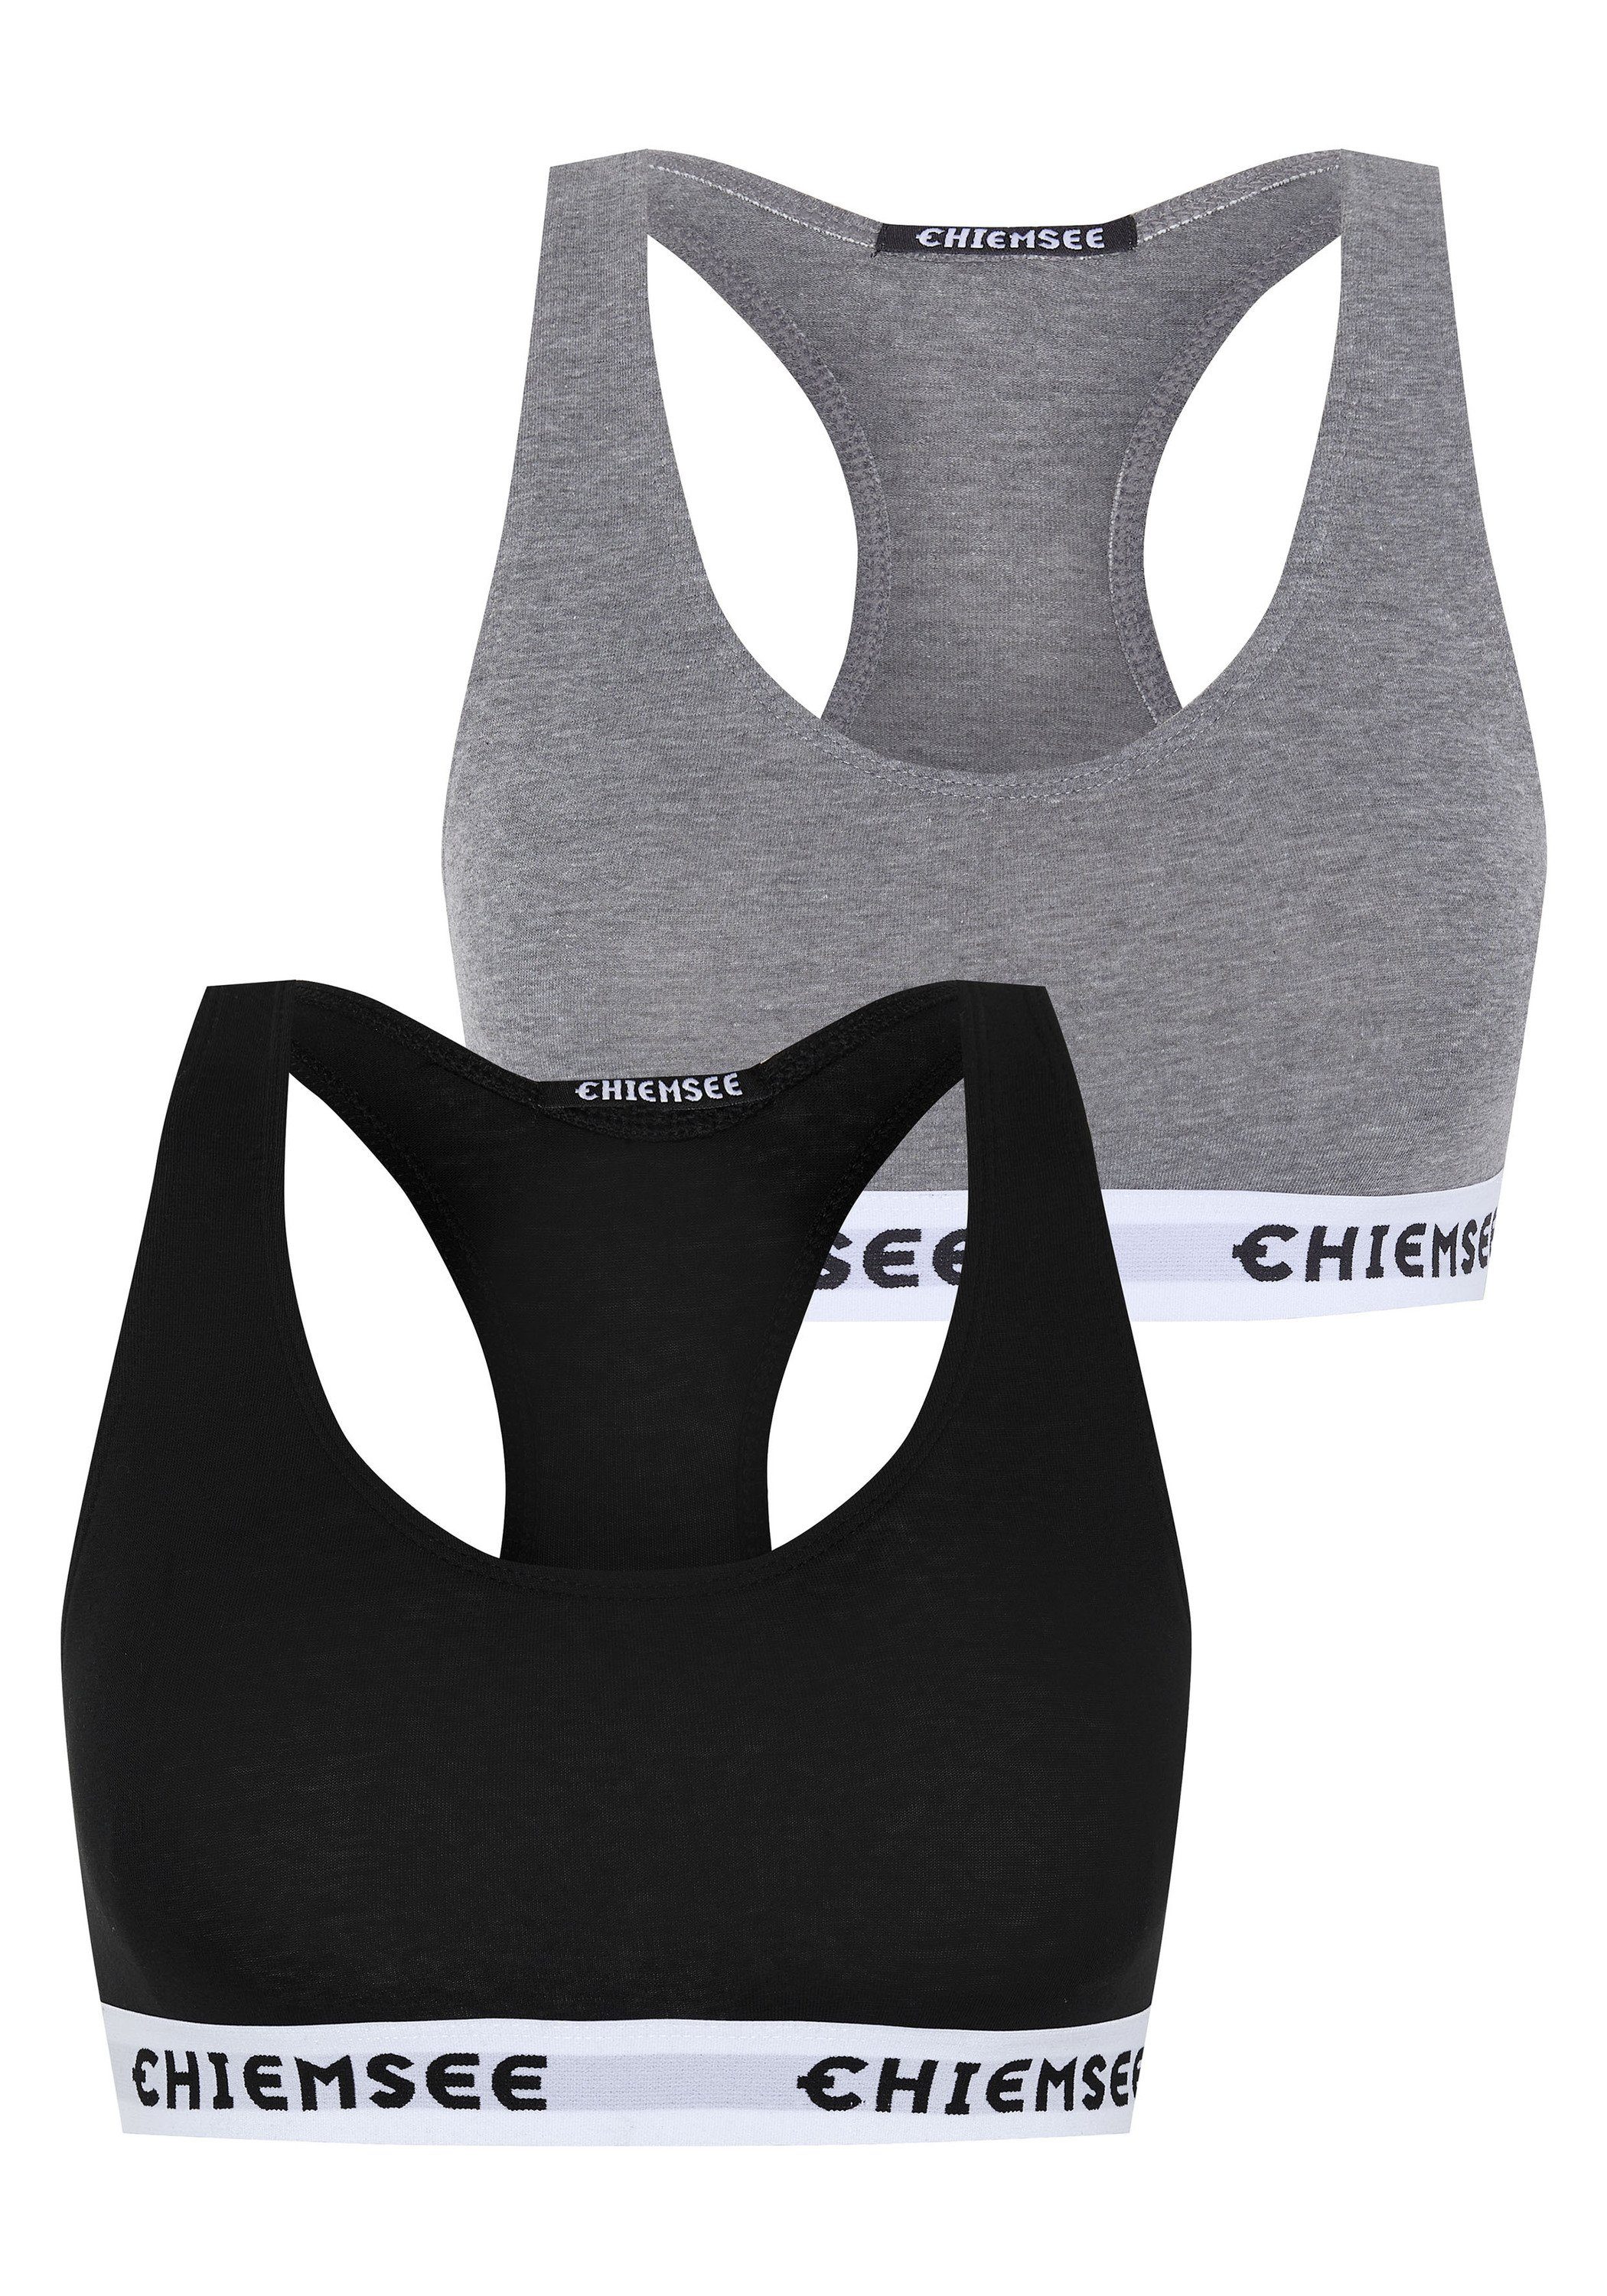 Medium Grey/Black Bustier 2 2er-Pack Chiemsee mit Logos (Set) Sport-BH